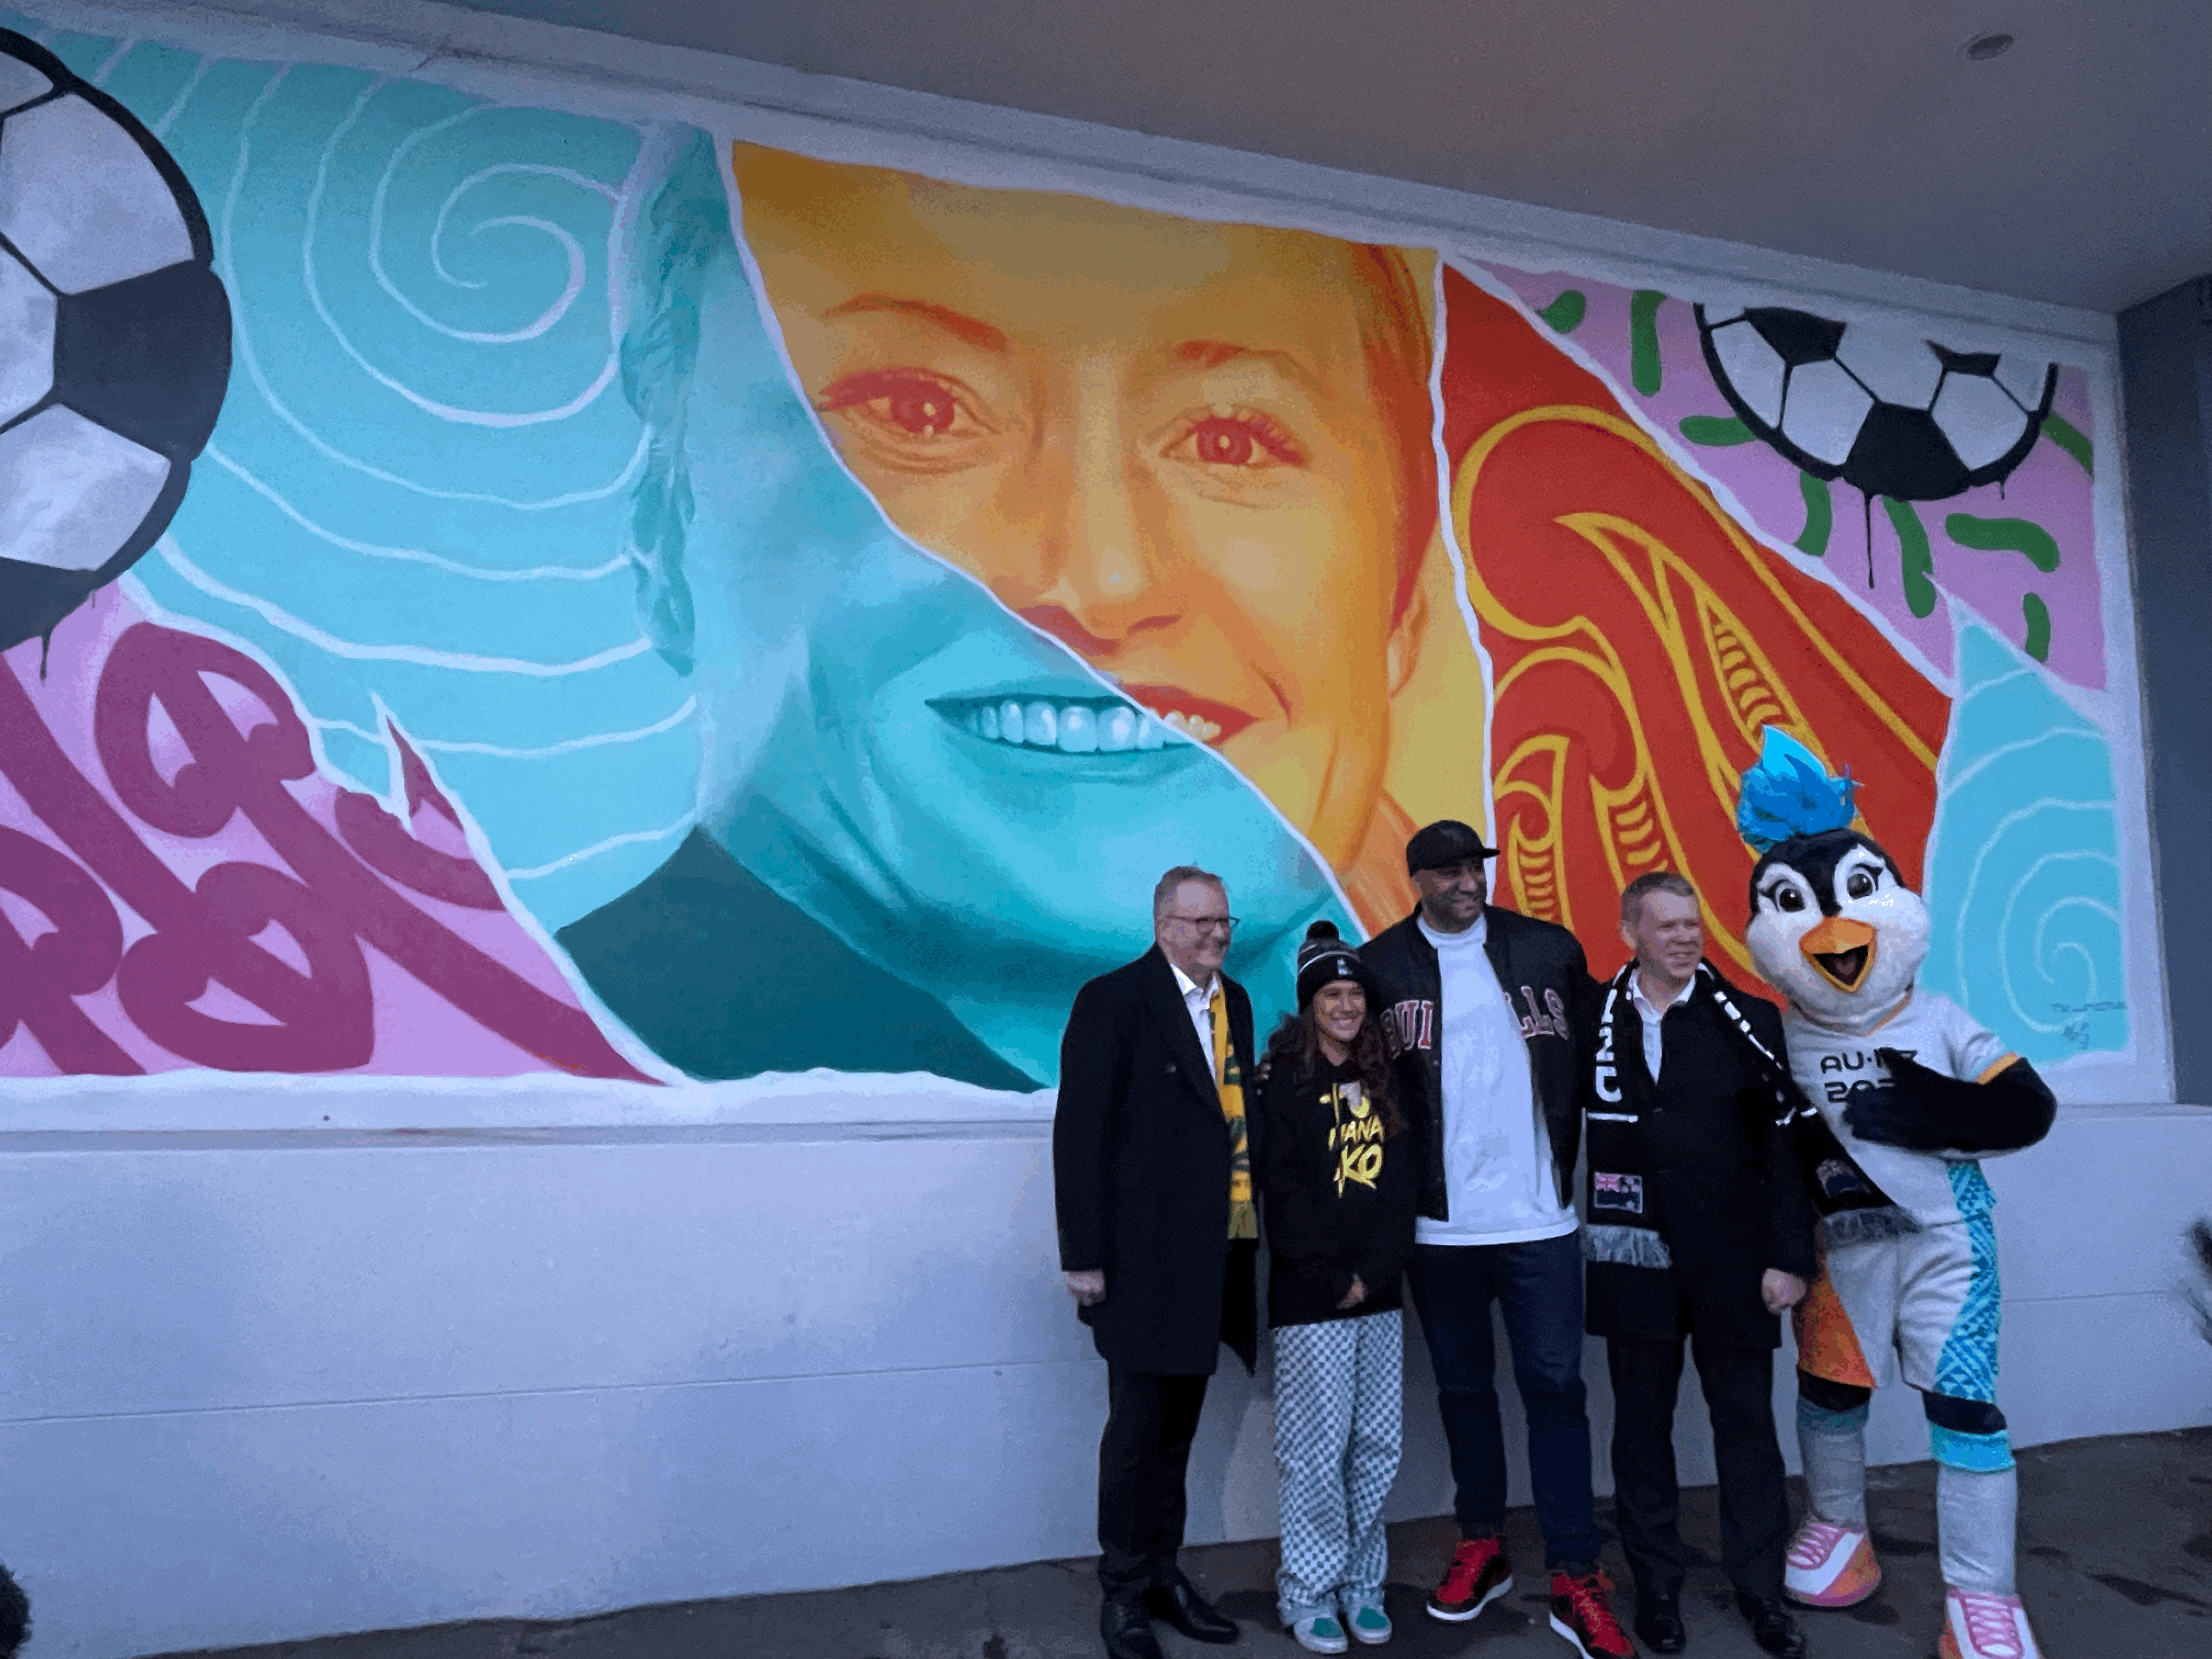 27) Antipodean leaders celebrate local art outside fan zone in Wellington